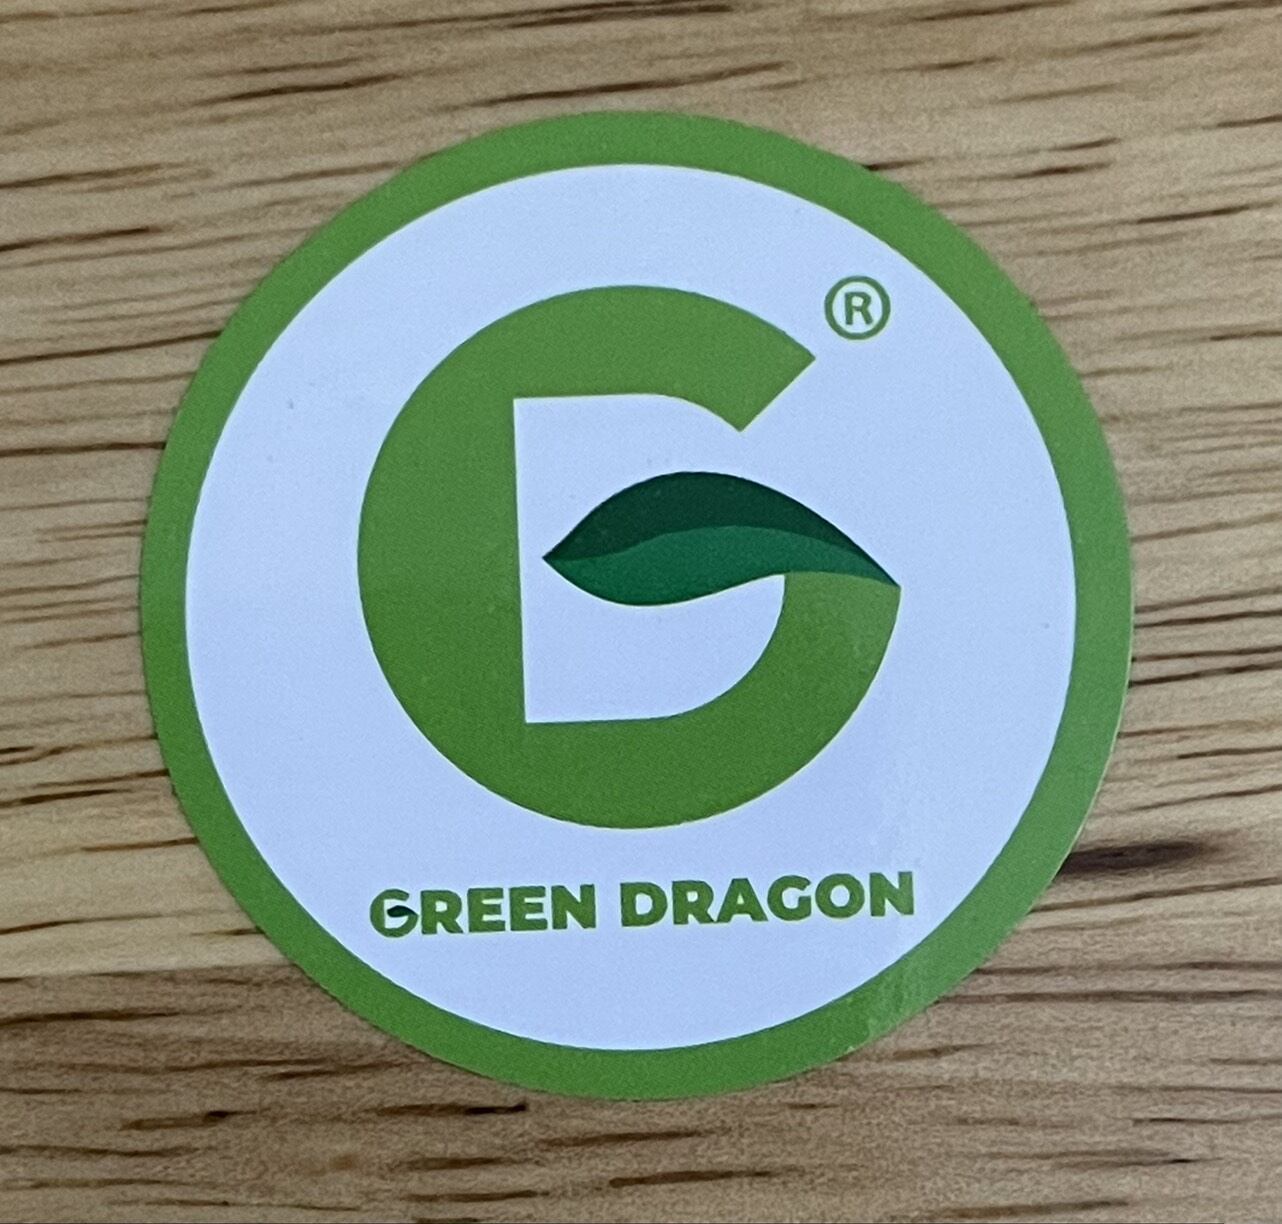 Nước làm mát động cơ max one chính hãng green dragon thái lan - ảnh sản phẩm 1